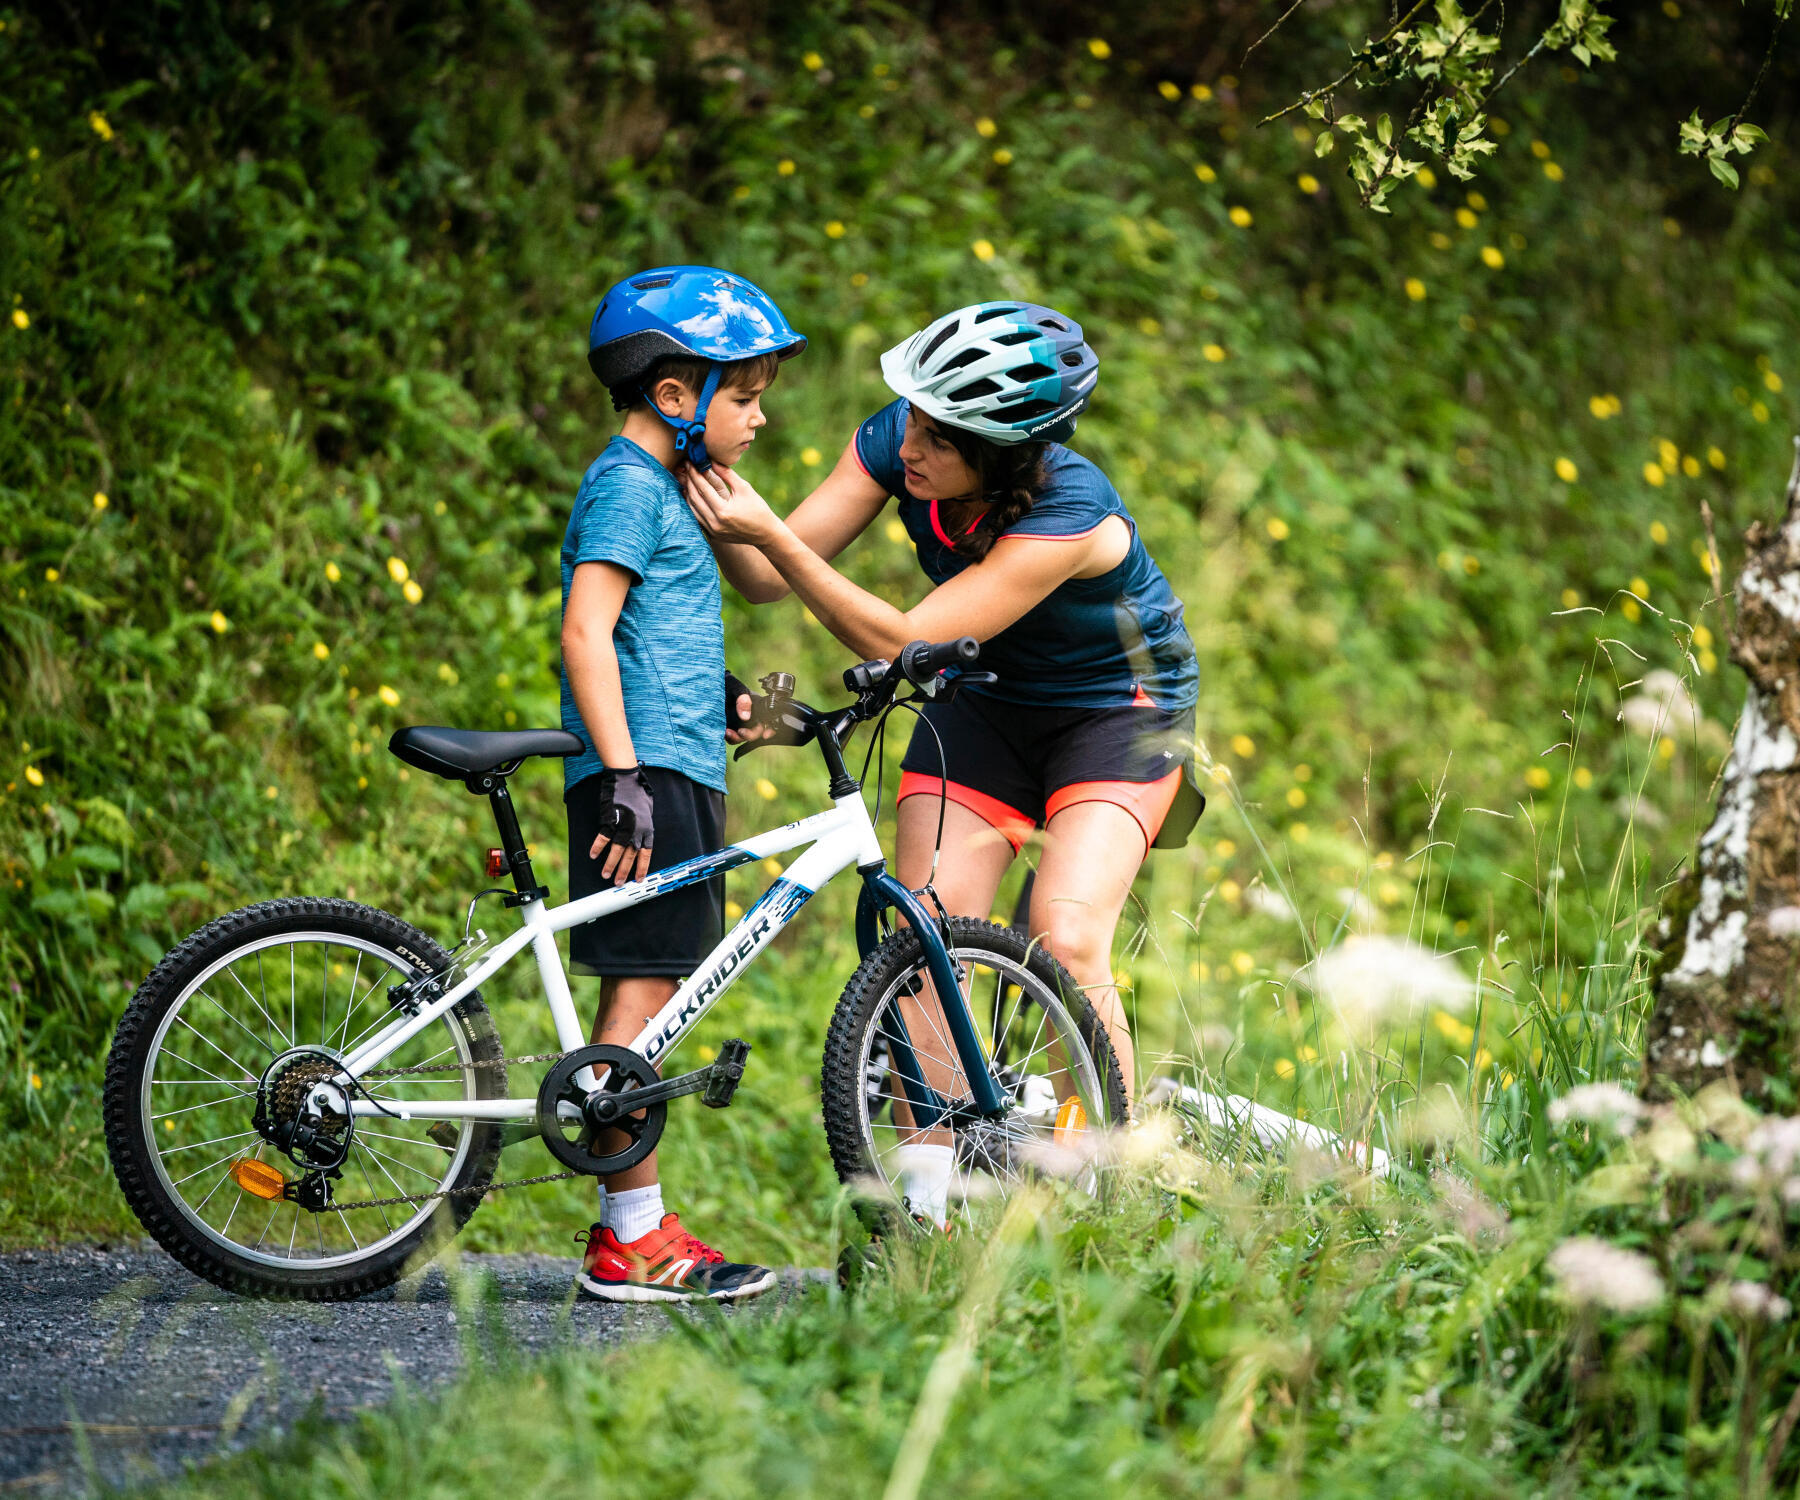 Première sortie vélo avec votre enfant : tout ce qu'il faut savoir